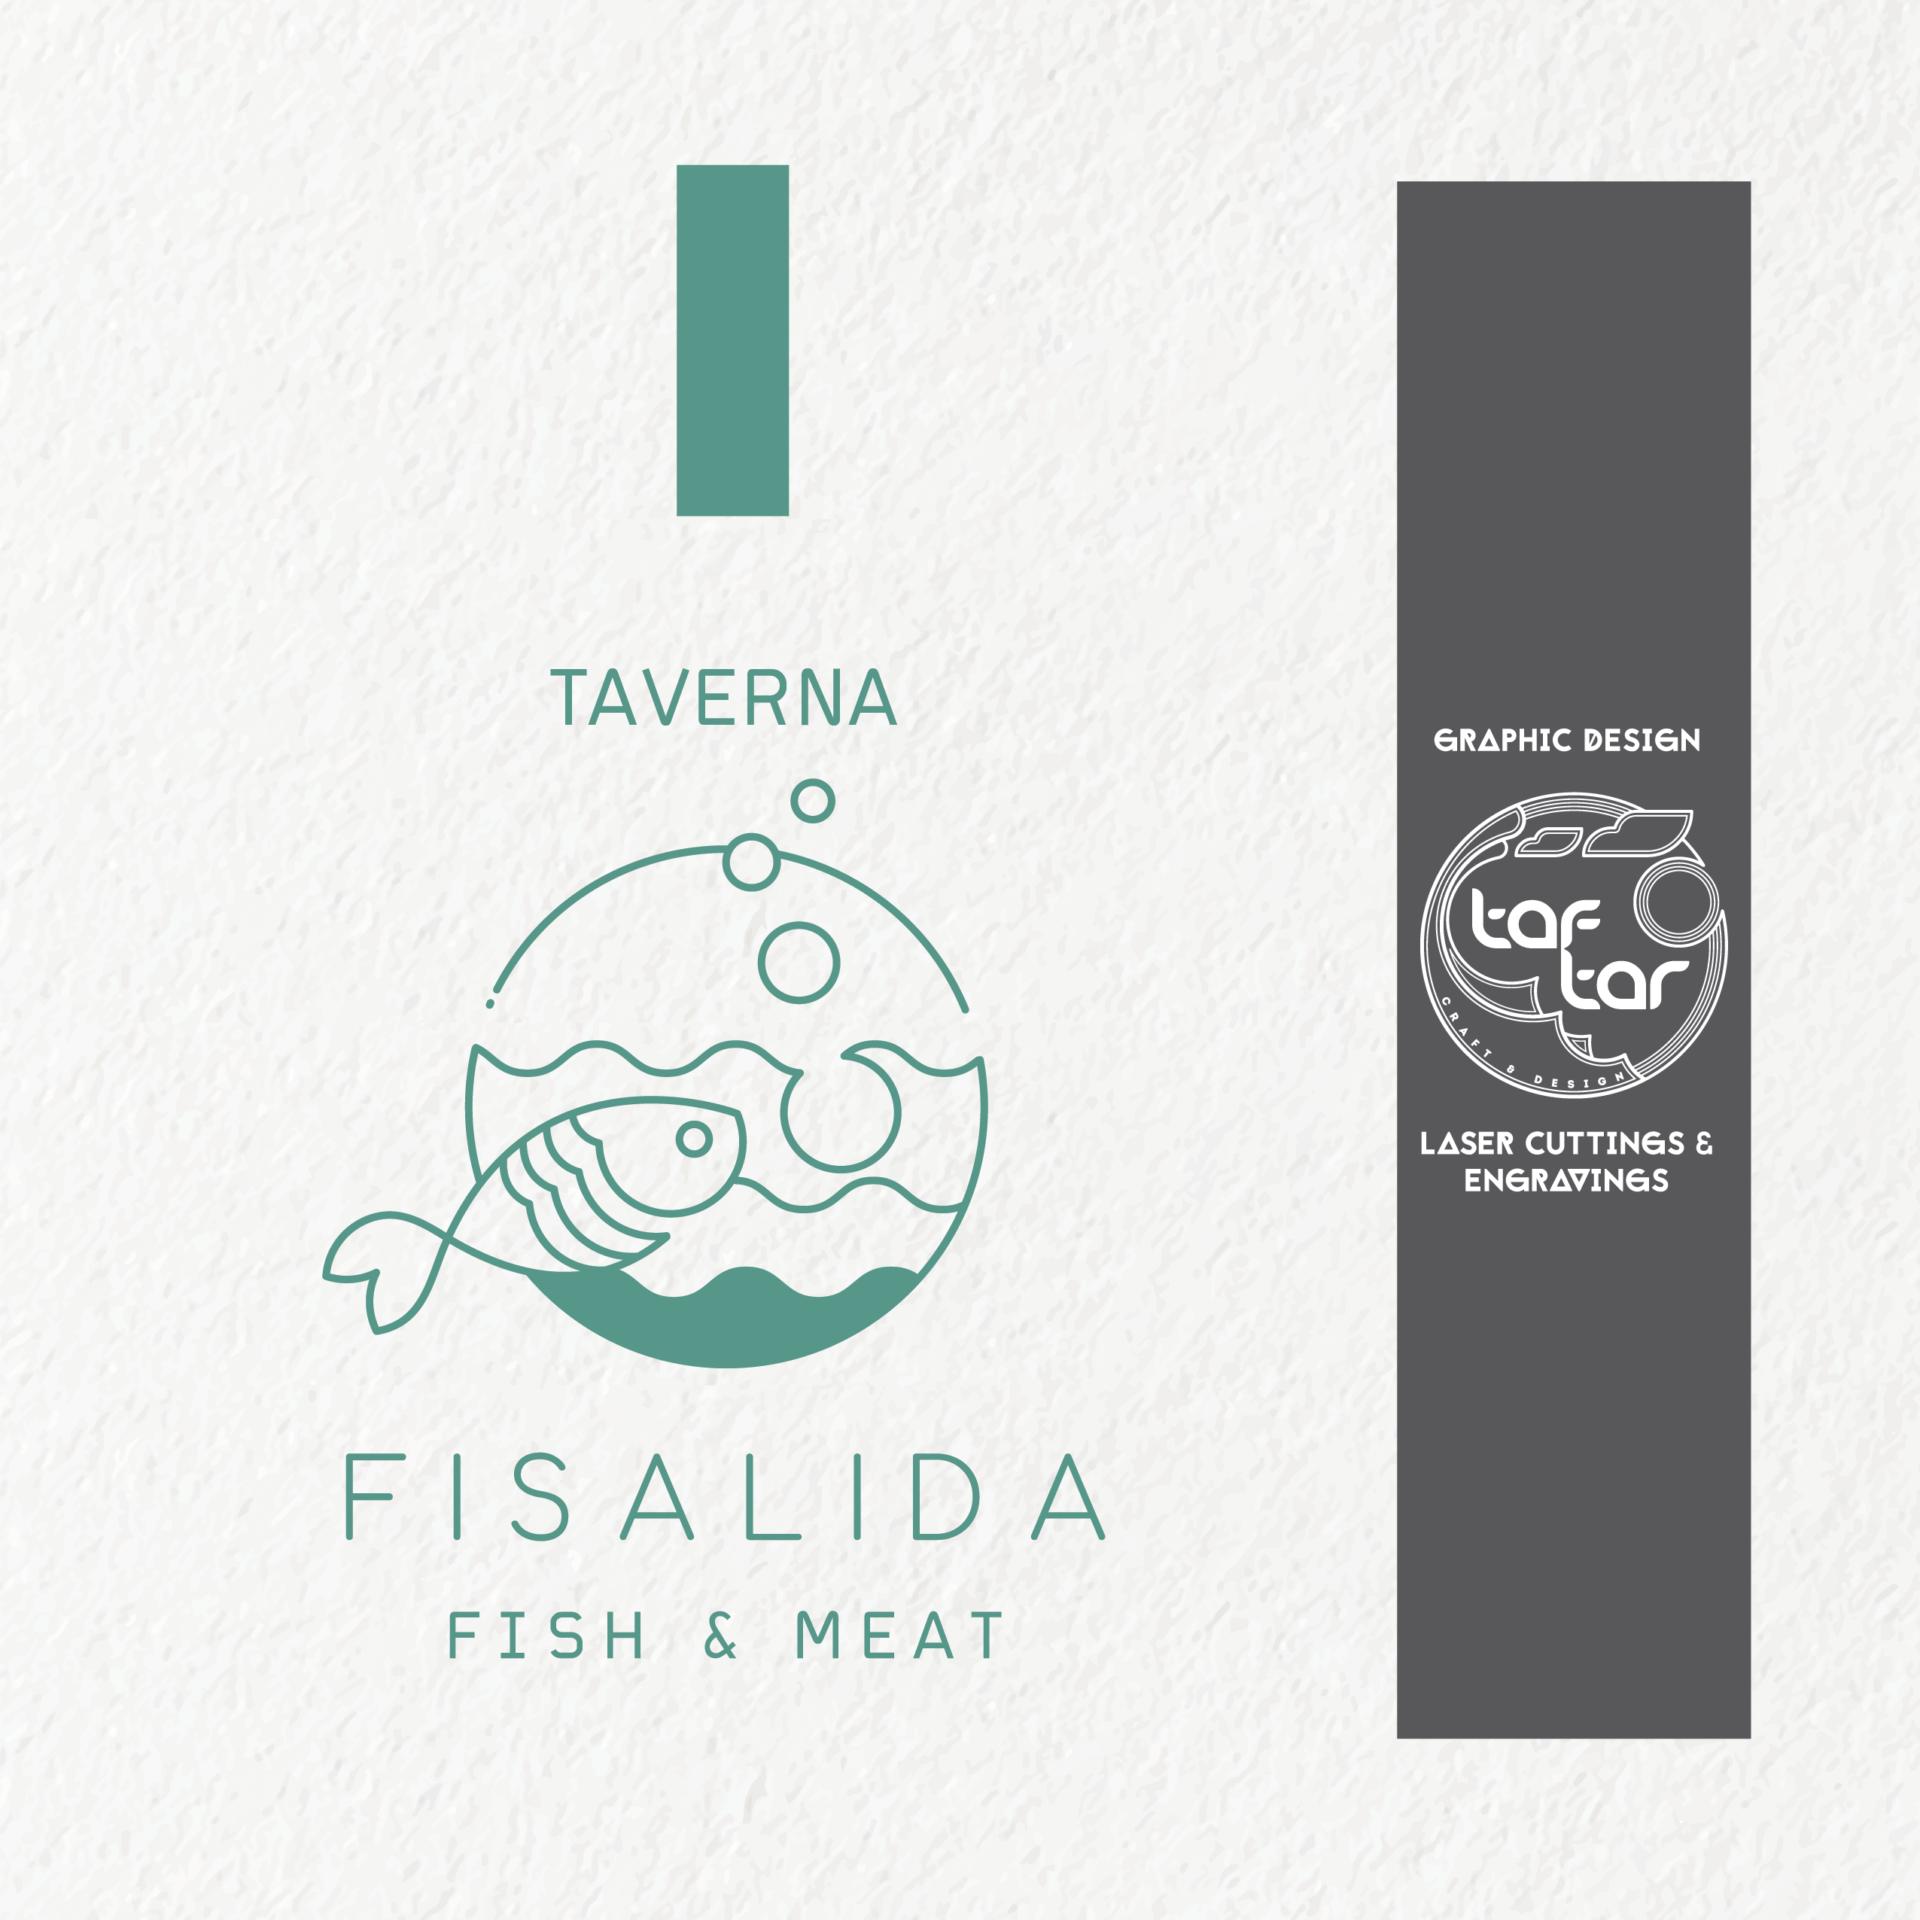 Fisalida - Fish & Meat